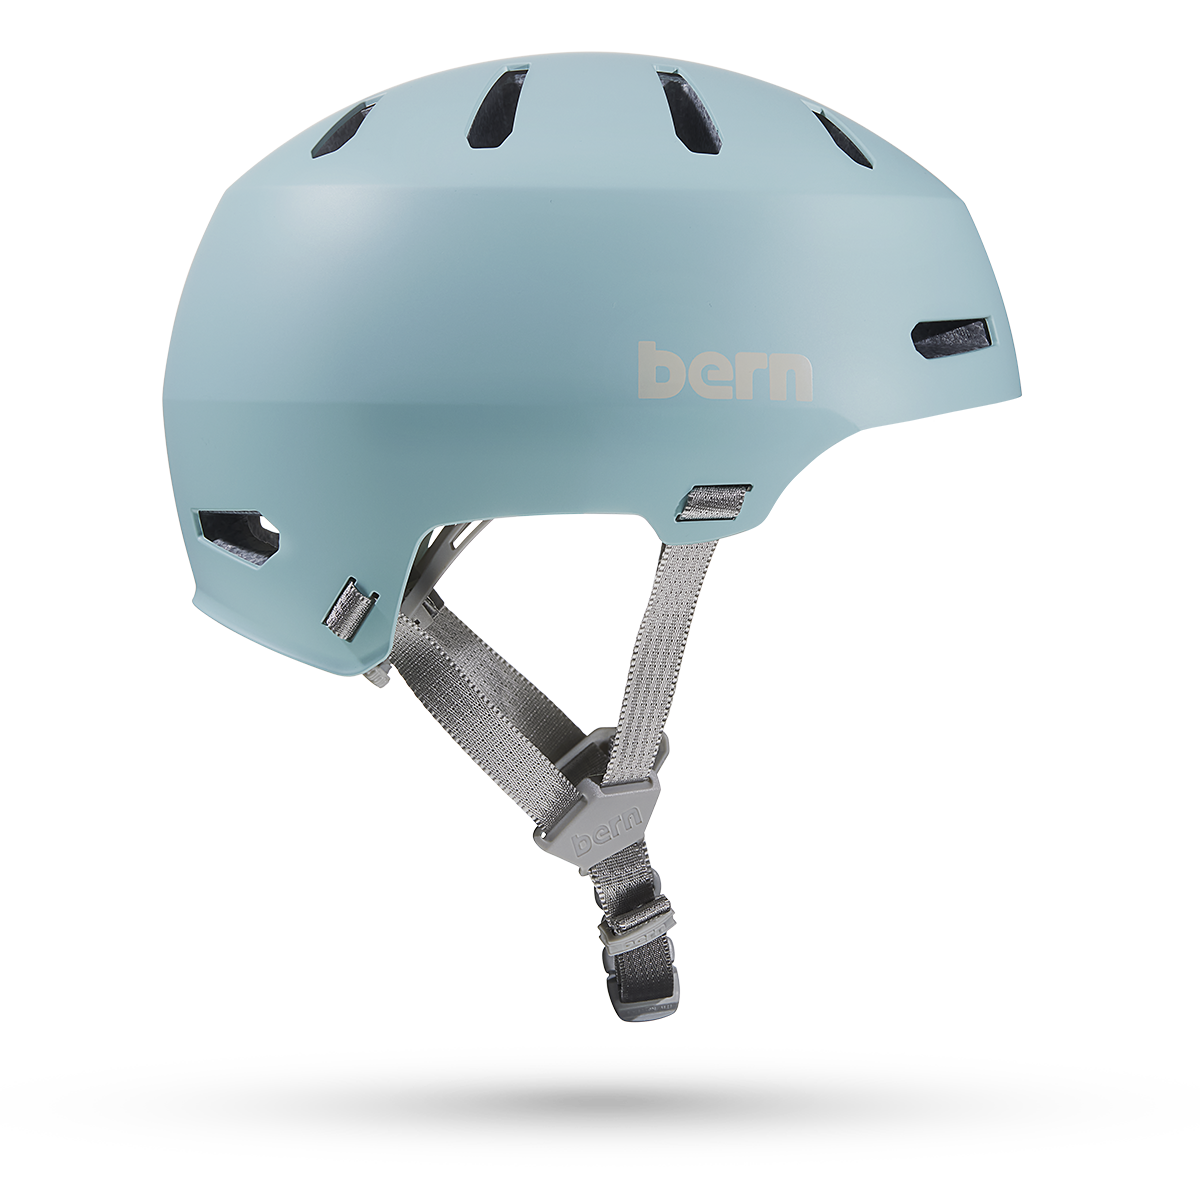 Macon 2.0 Jr. MIPS Bike Helmet